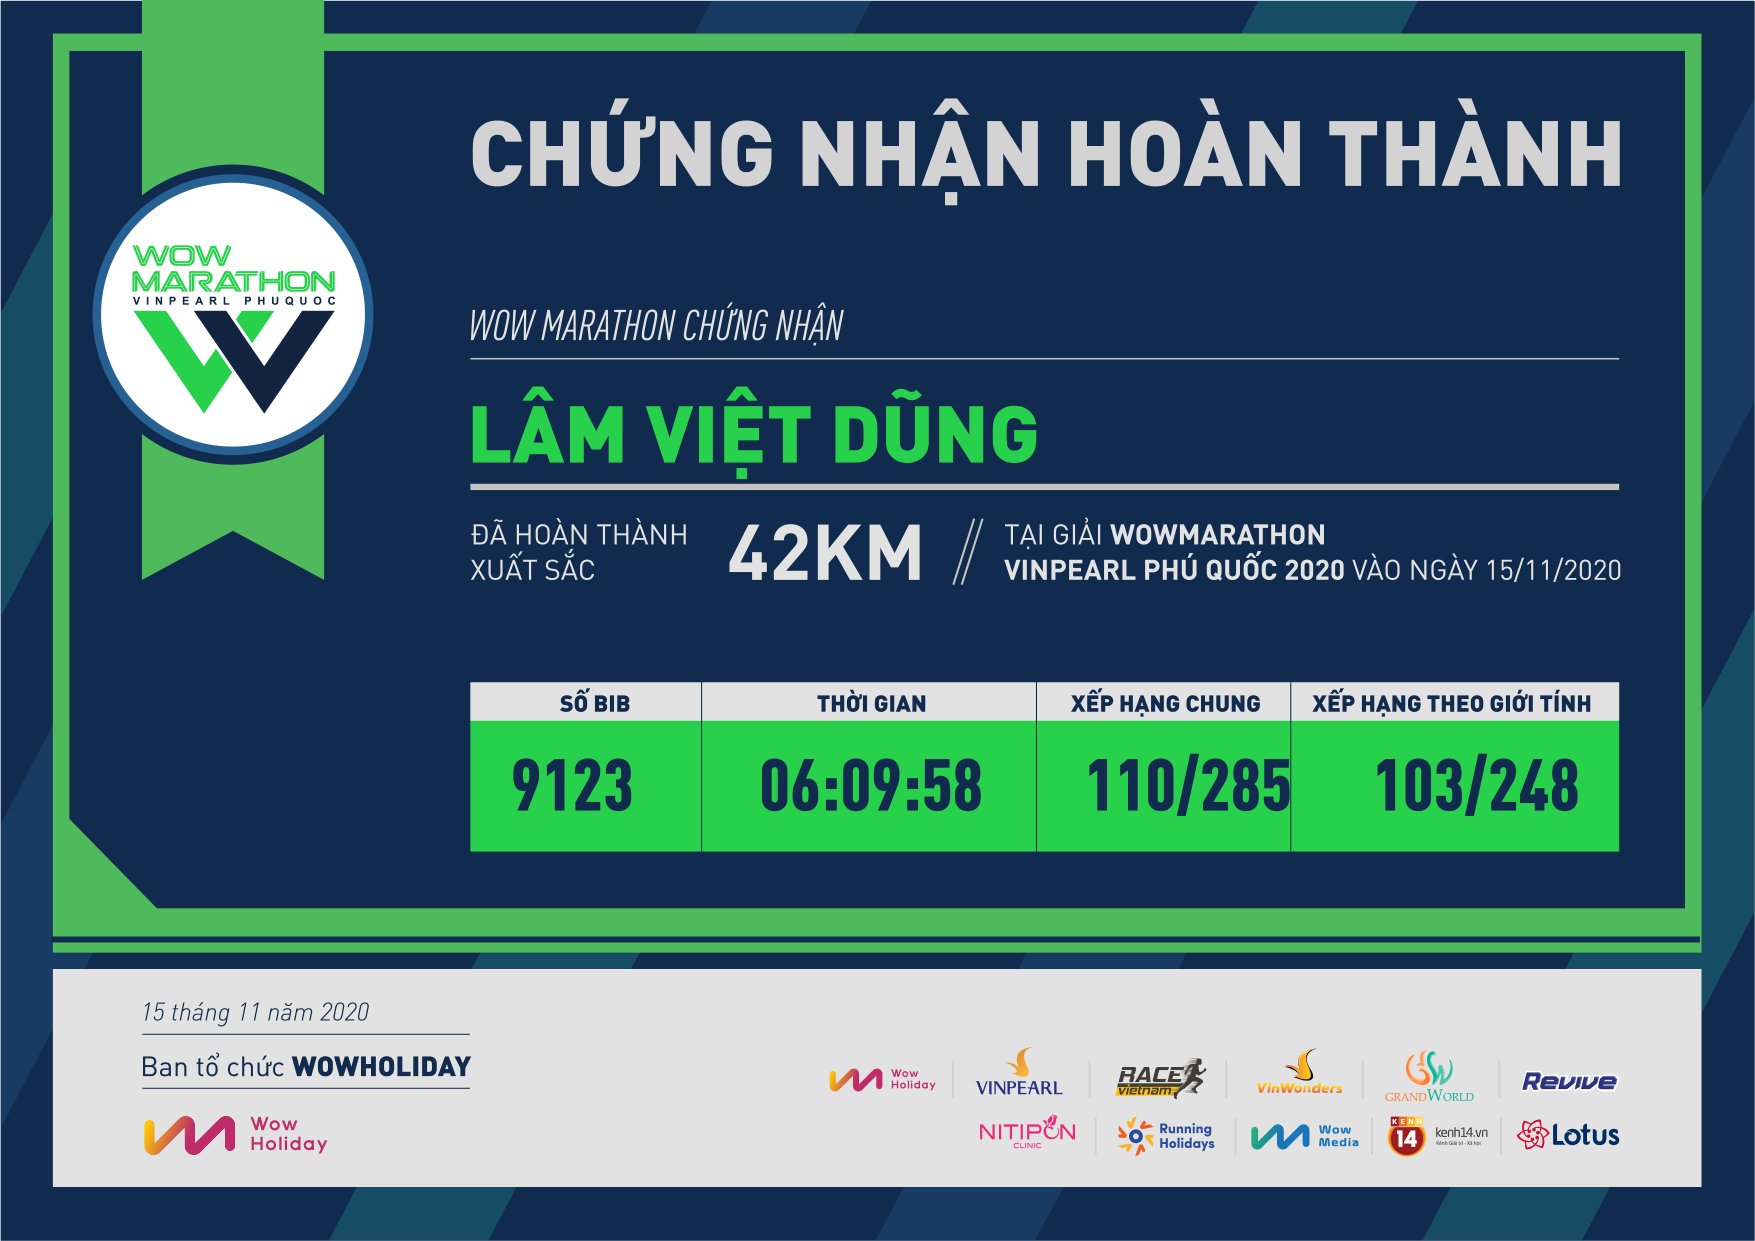 9123 - Lâm Việt Dũng